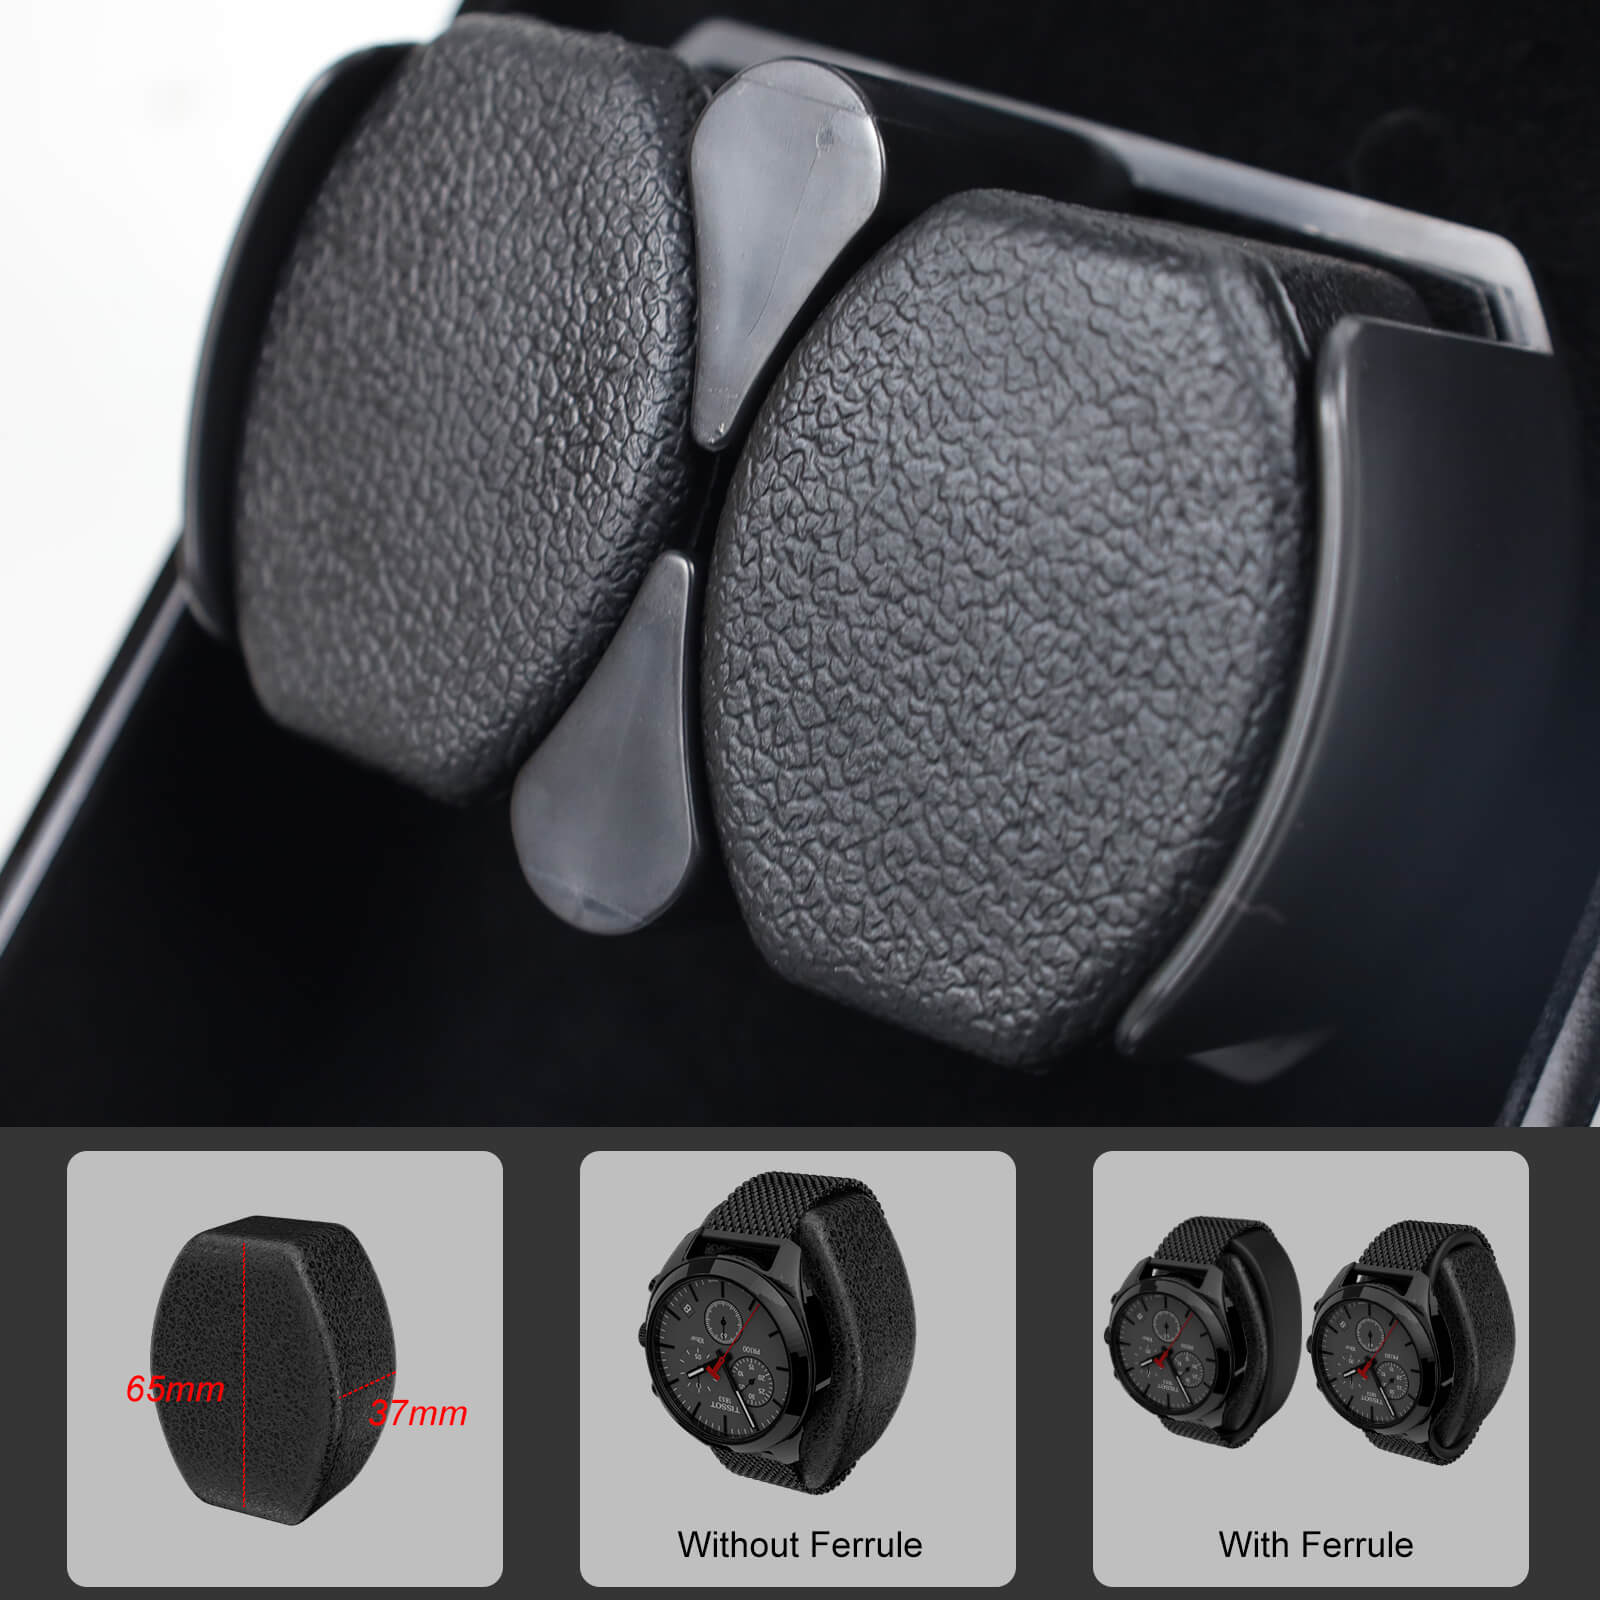 Remontoir double pour montres automatiques avec oreiller en peluche flexible, moteur super silencieux - Noir